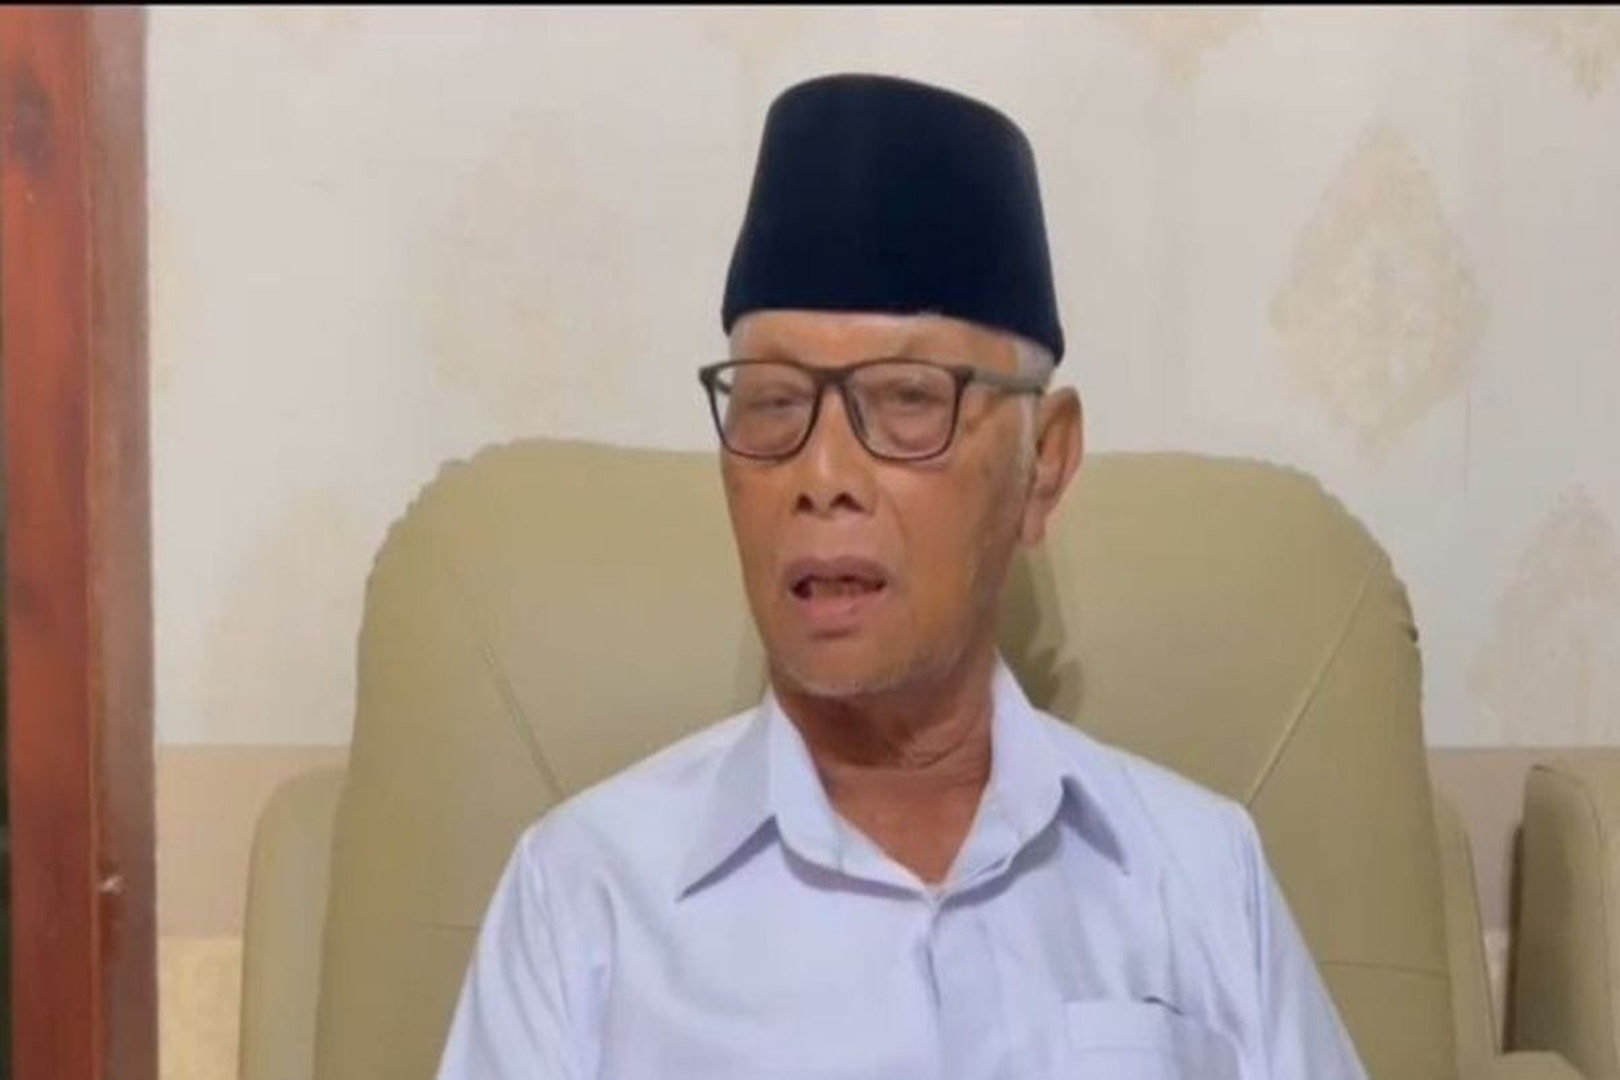 Soal Candaan Zulhas, MUI : Amin di Akhir Al-Fatihah Sudah Biasa Sejak Indonesia Belum Ada dan Selalu Ada hingga Kiamat